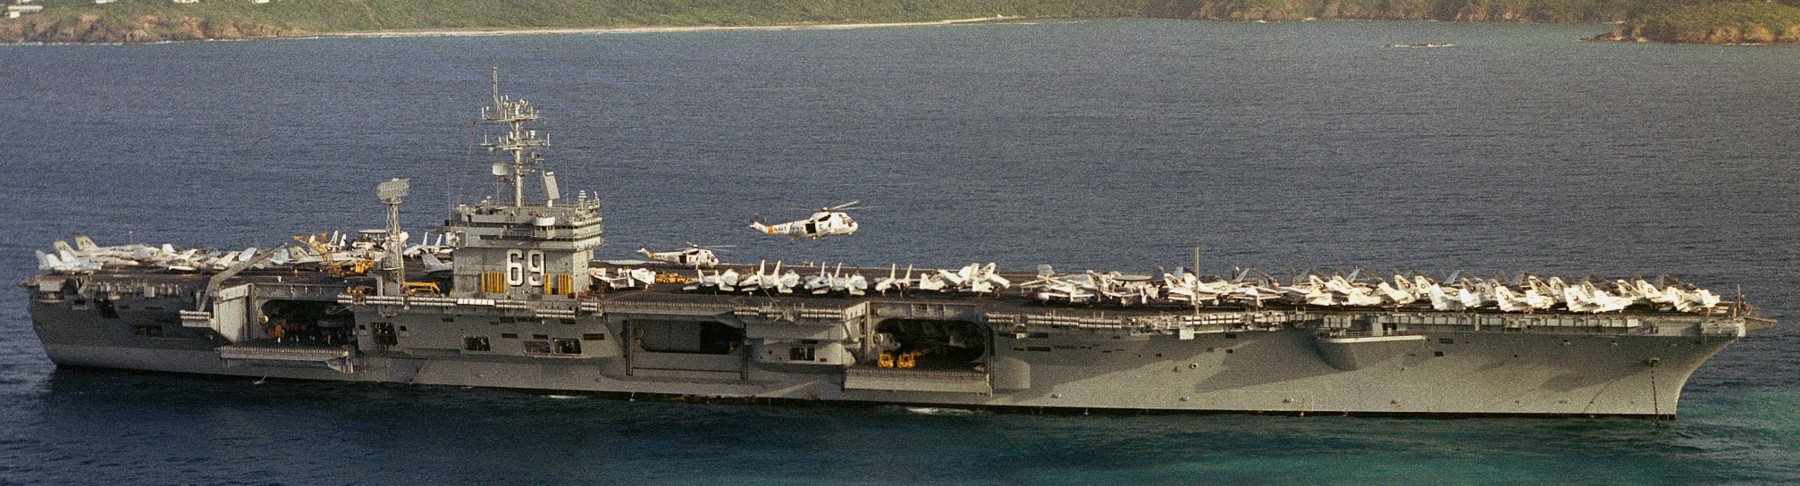 cvn-69 uss dwight d. eisenhower aircraft carrier air wing cvw-7 us navy 245